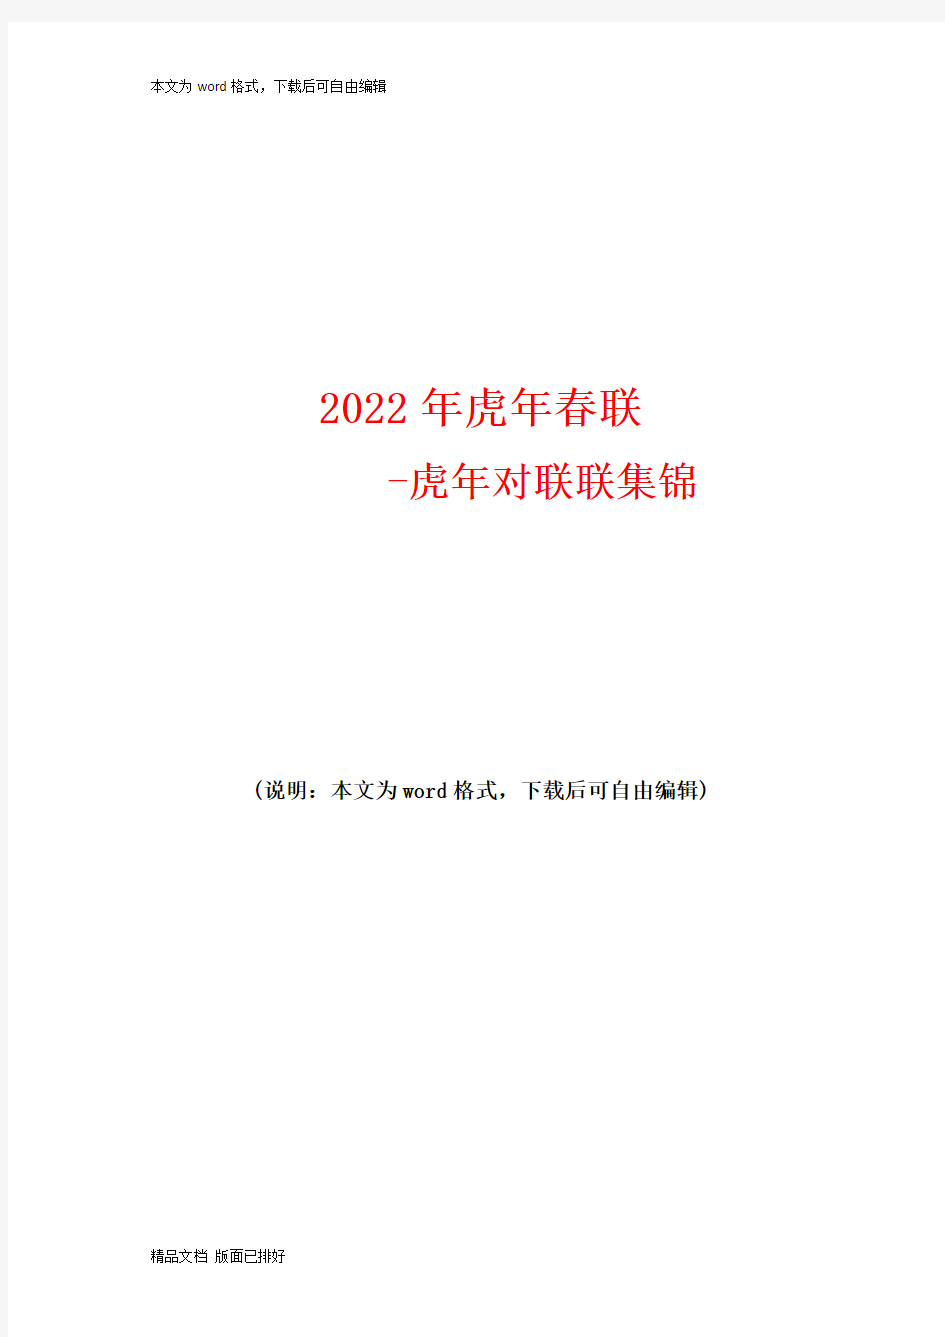 2022年虎年春联-虎年对联联集锦